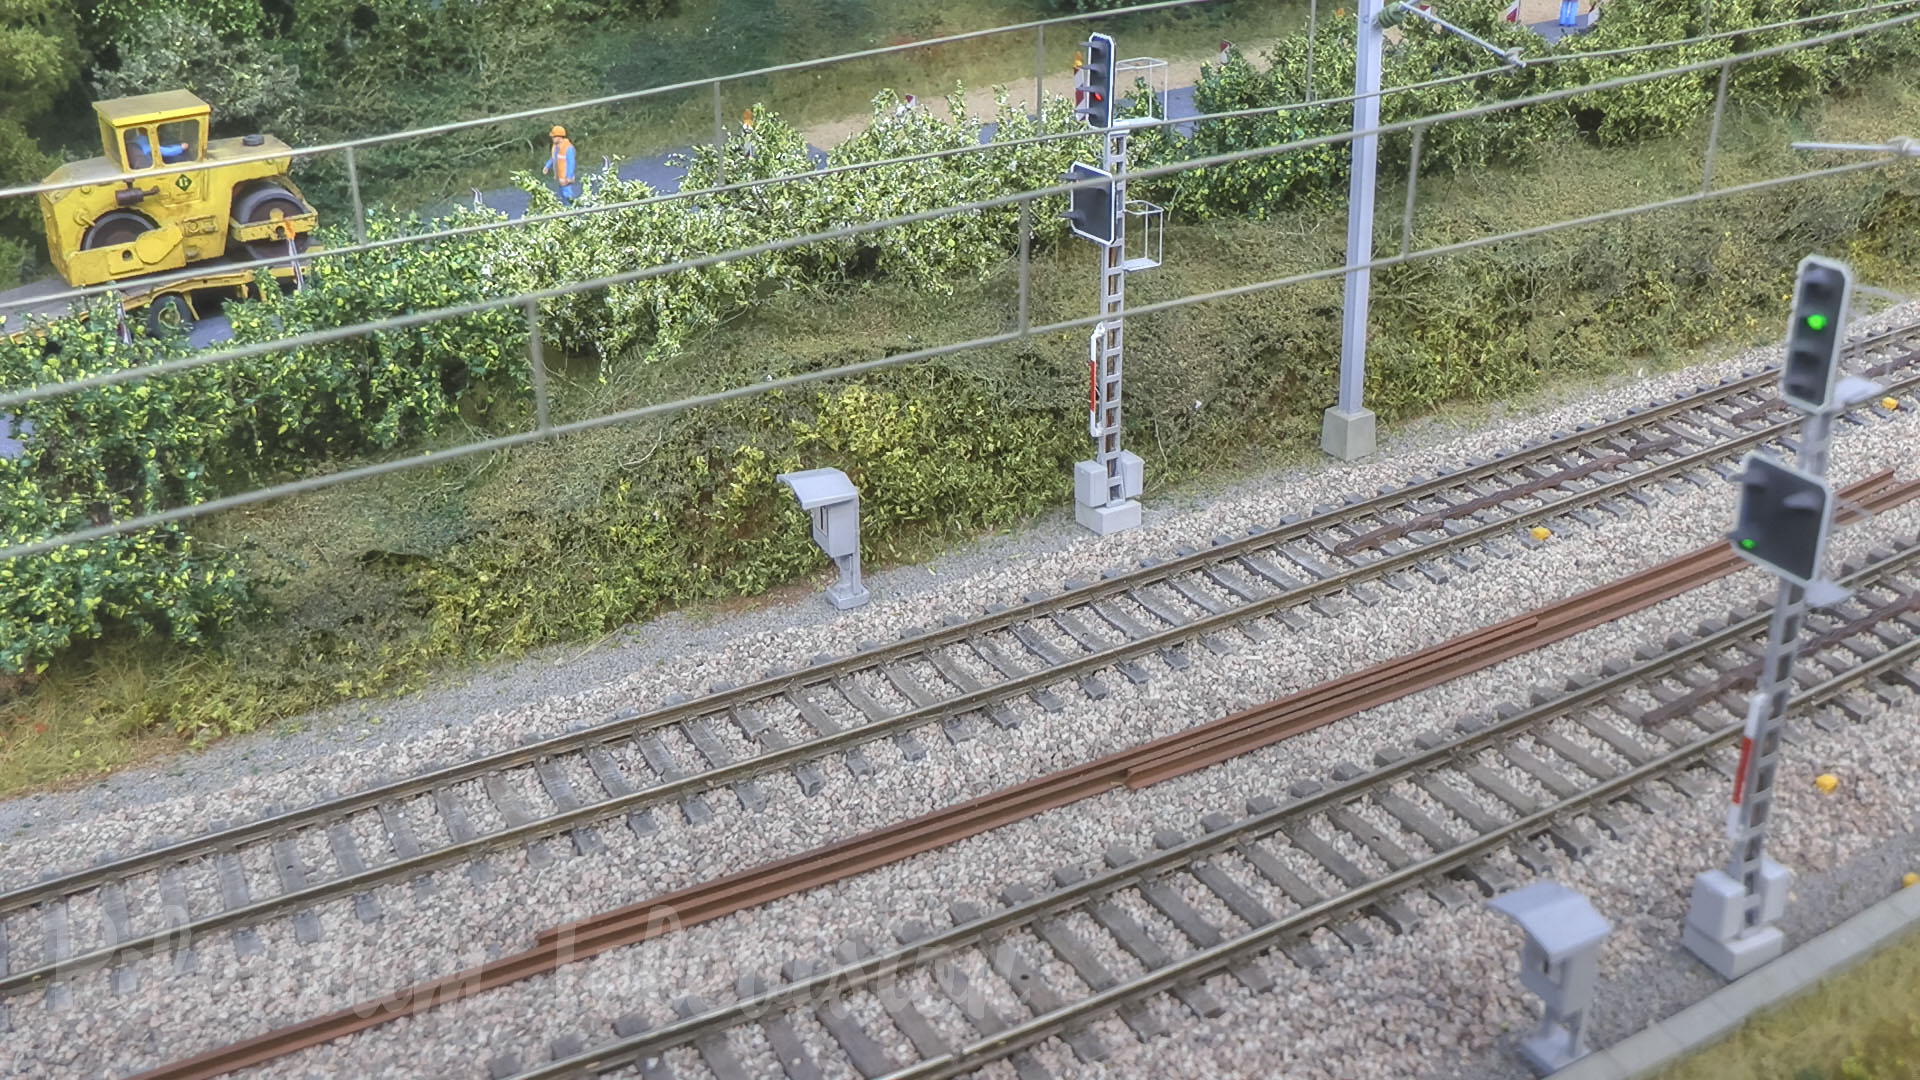 Bellissimo plastico ferroviario in scala HO con modellini di treni del trasporto ferroviario del Lussemburgo